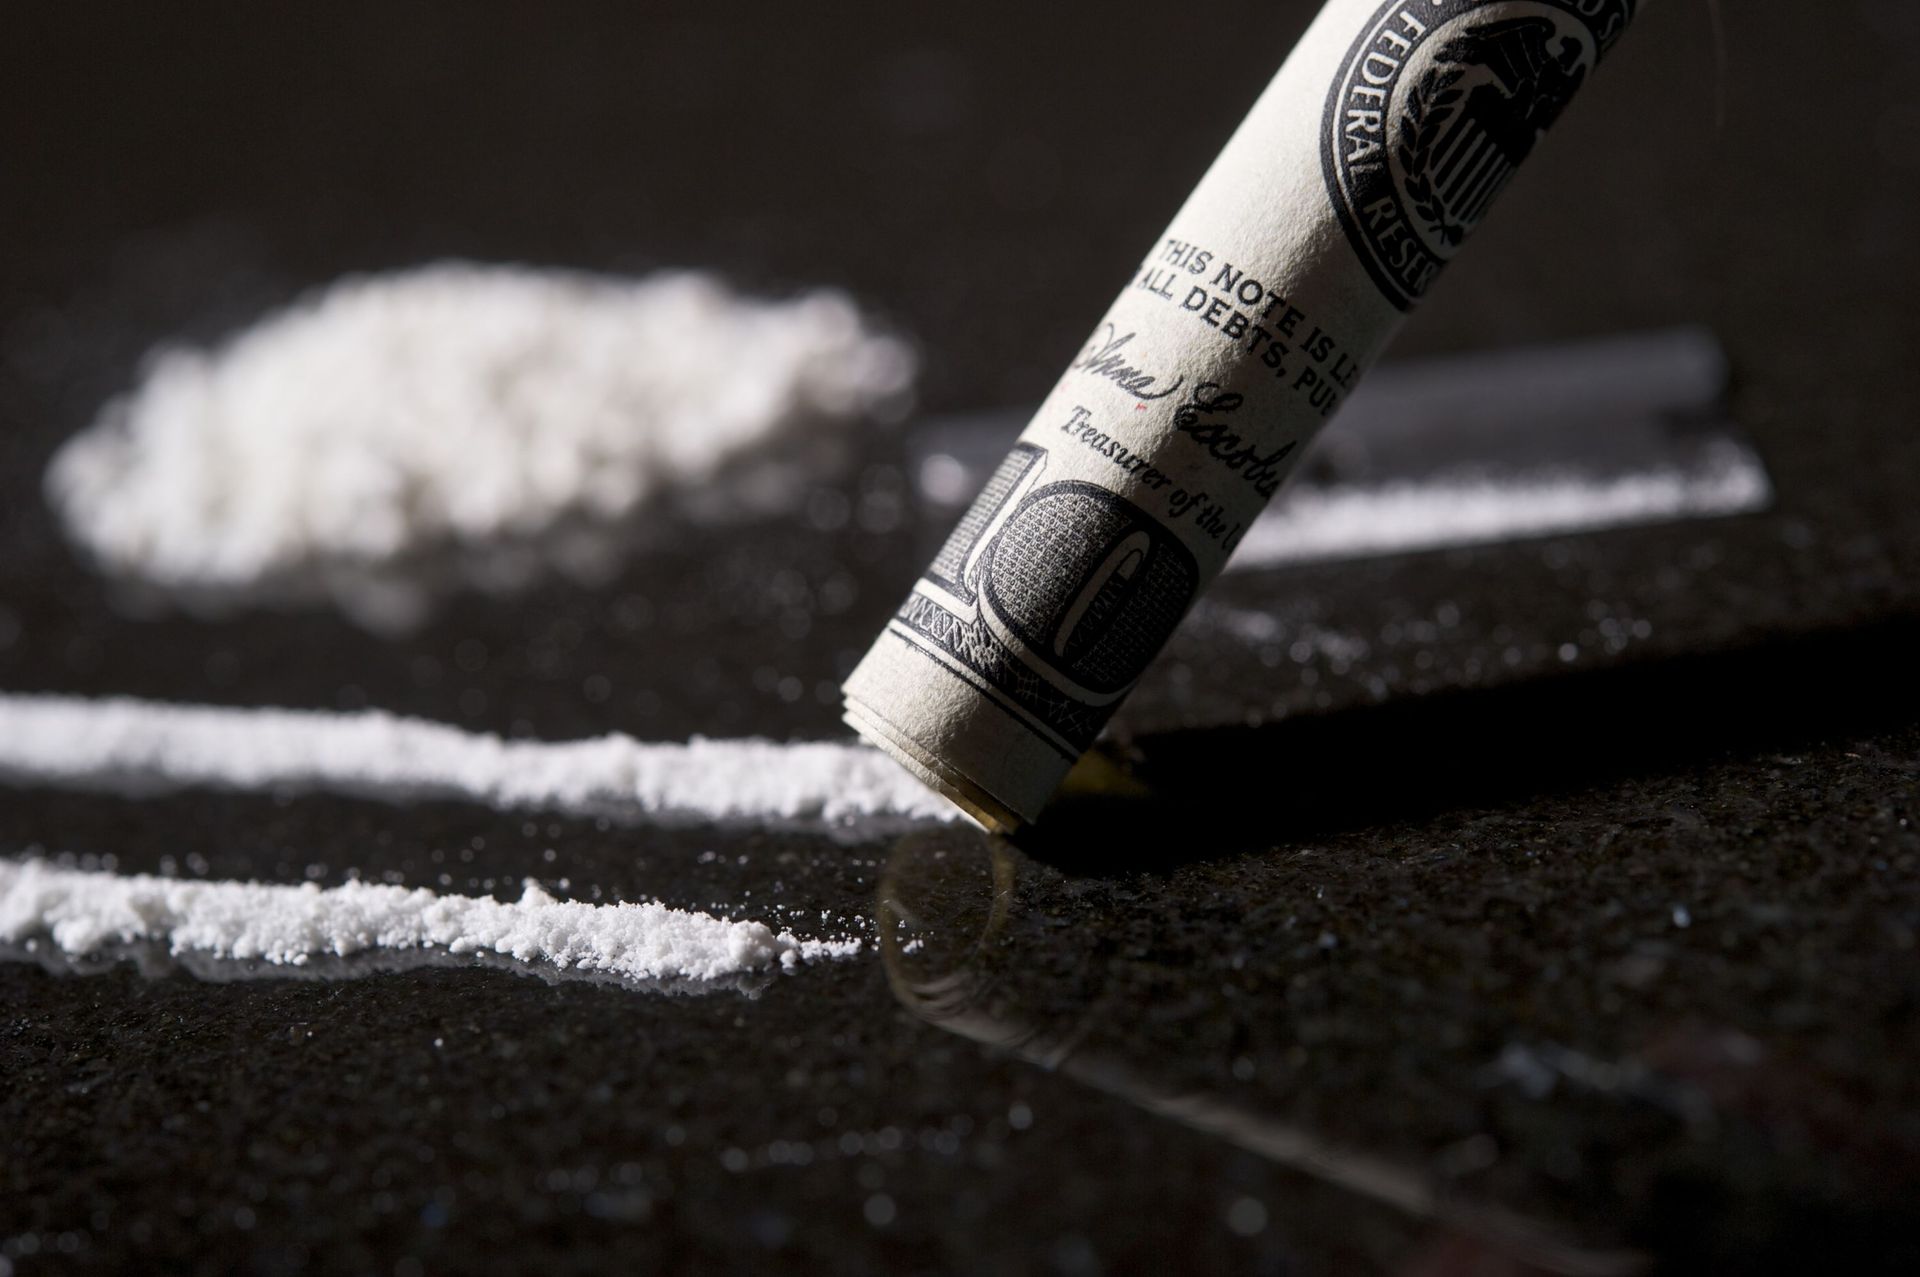 Vente et production légale de cocaïne au Canada : une stratégie à